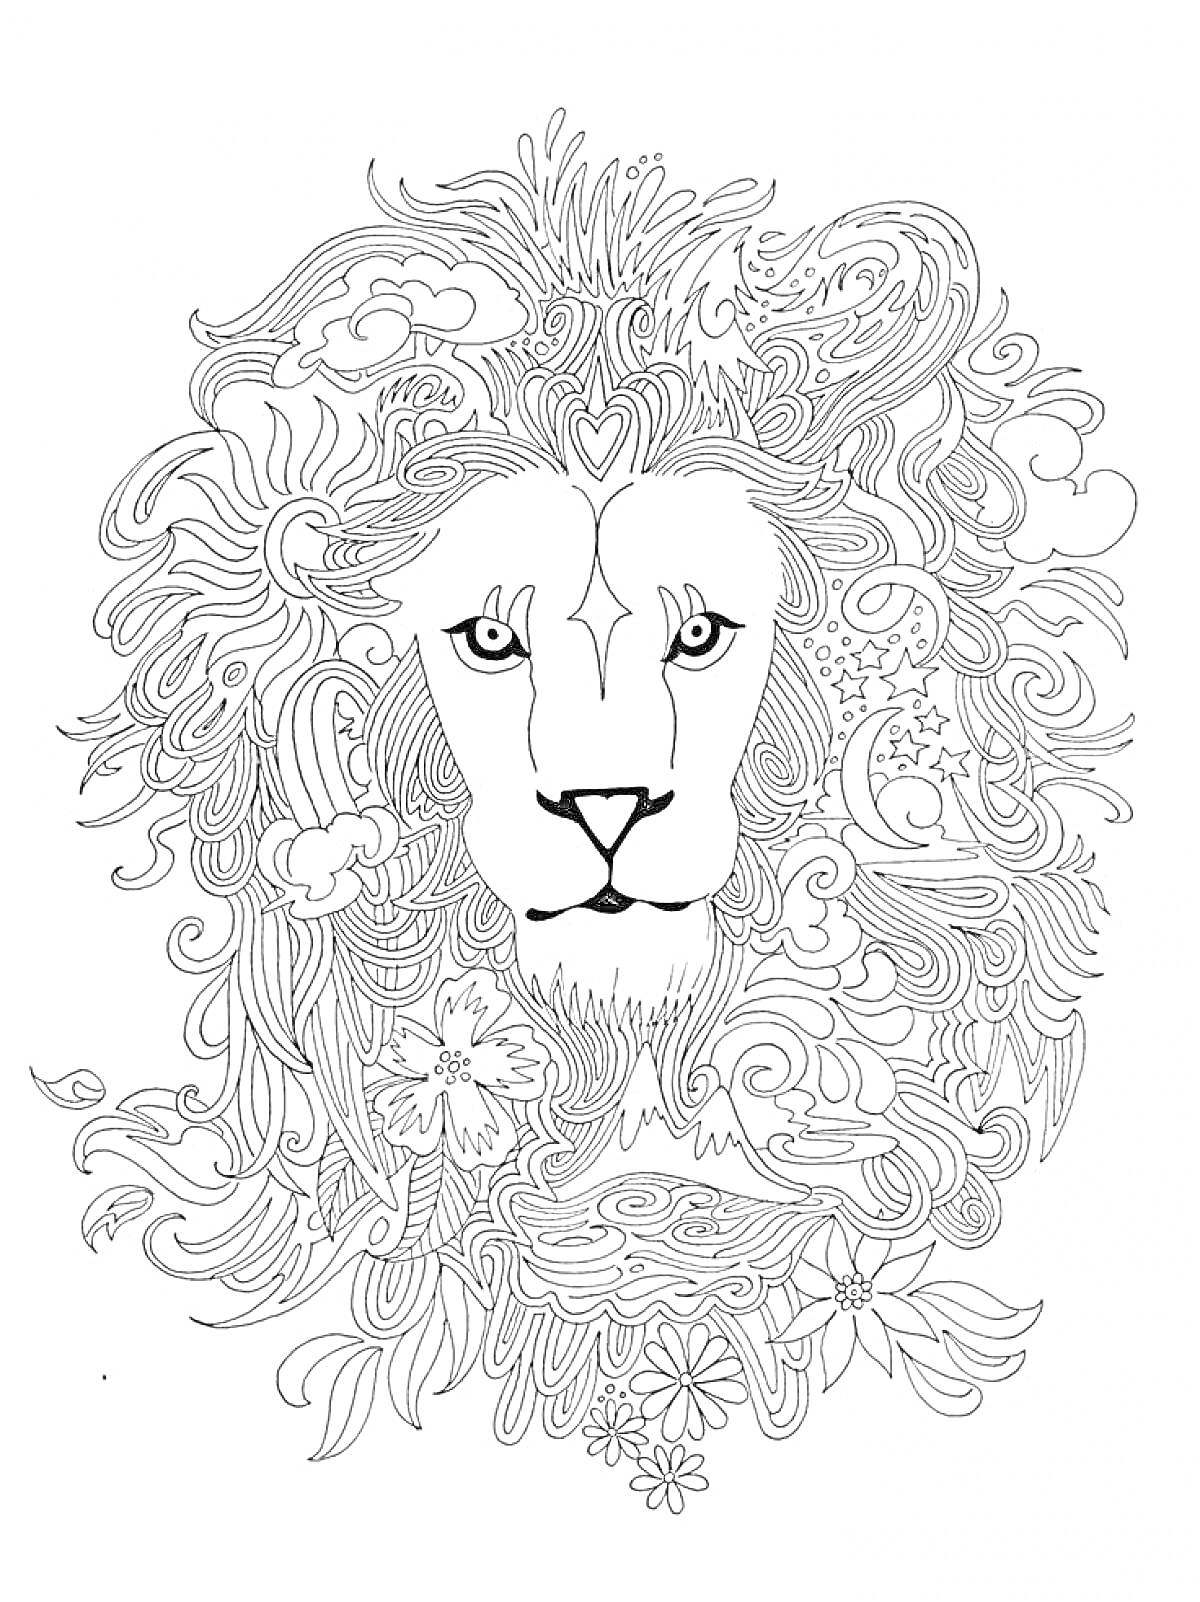 Лев с декоративной гривой, состоящей из волн, цветков, облаков и узоров